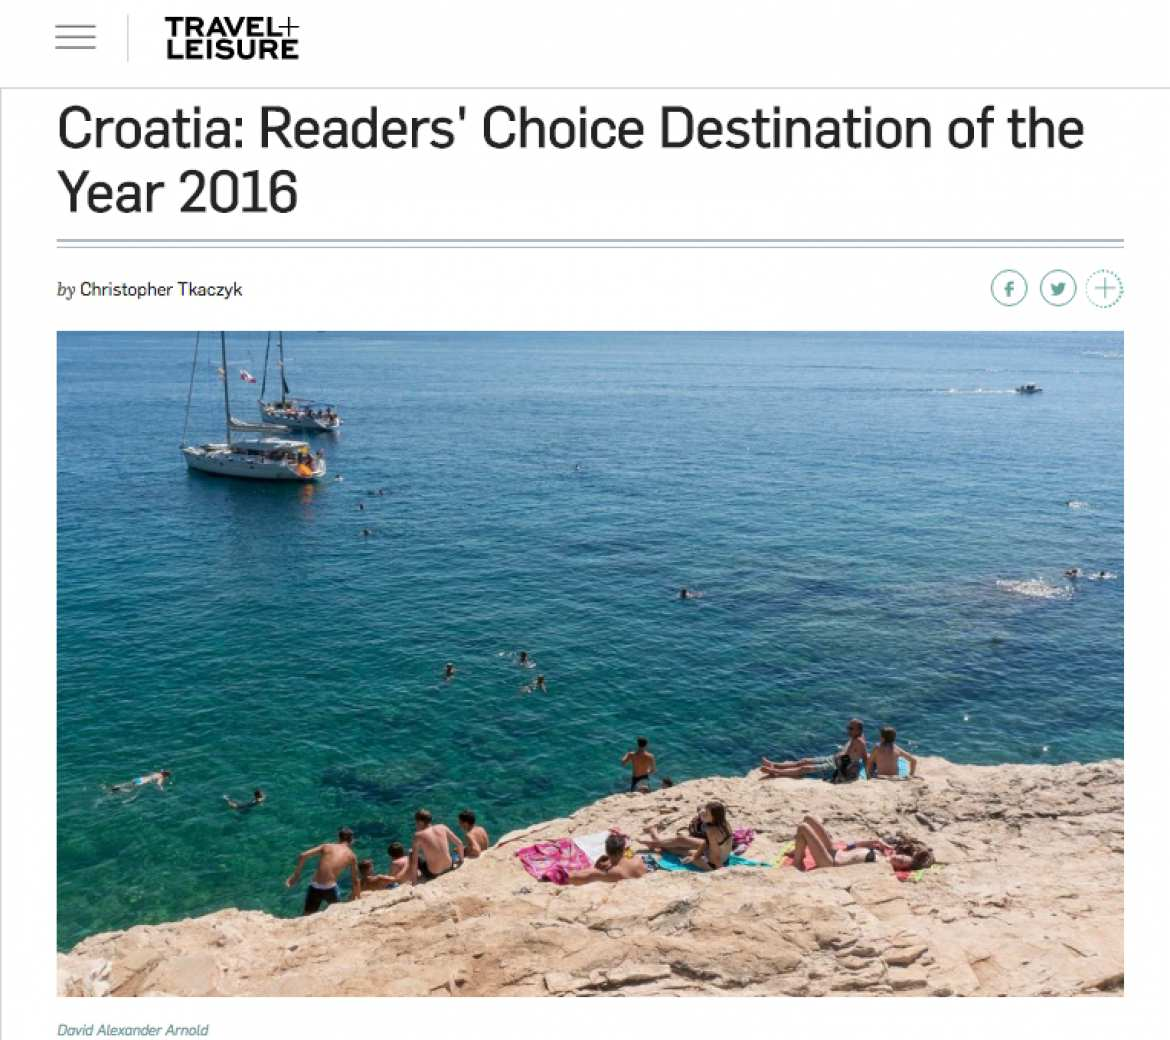 UNA RIVISTA AMERICANA HA DICHIARATO LA CROAZIA COME MIGLIORE DESTINAZIONE TURISTICA DEL MONDO NEL 2016 La famosa rivista americana di turismo Travel and Leisure (T+L) ha dichiarato la Croazia come